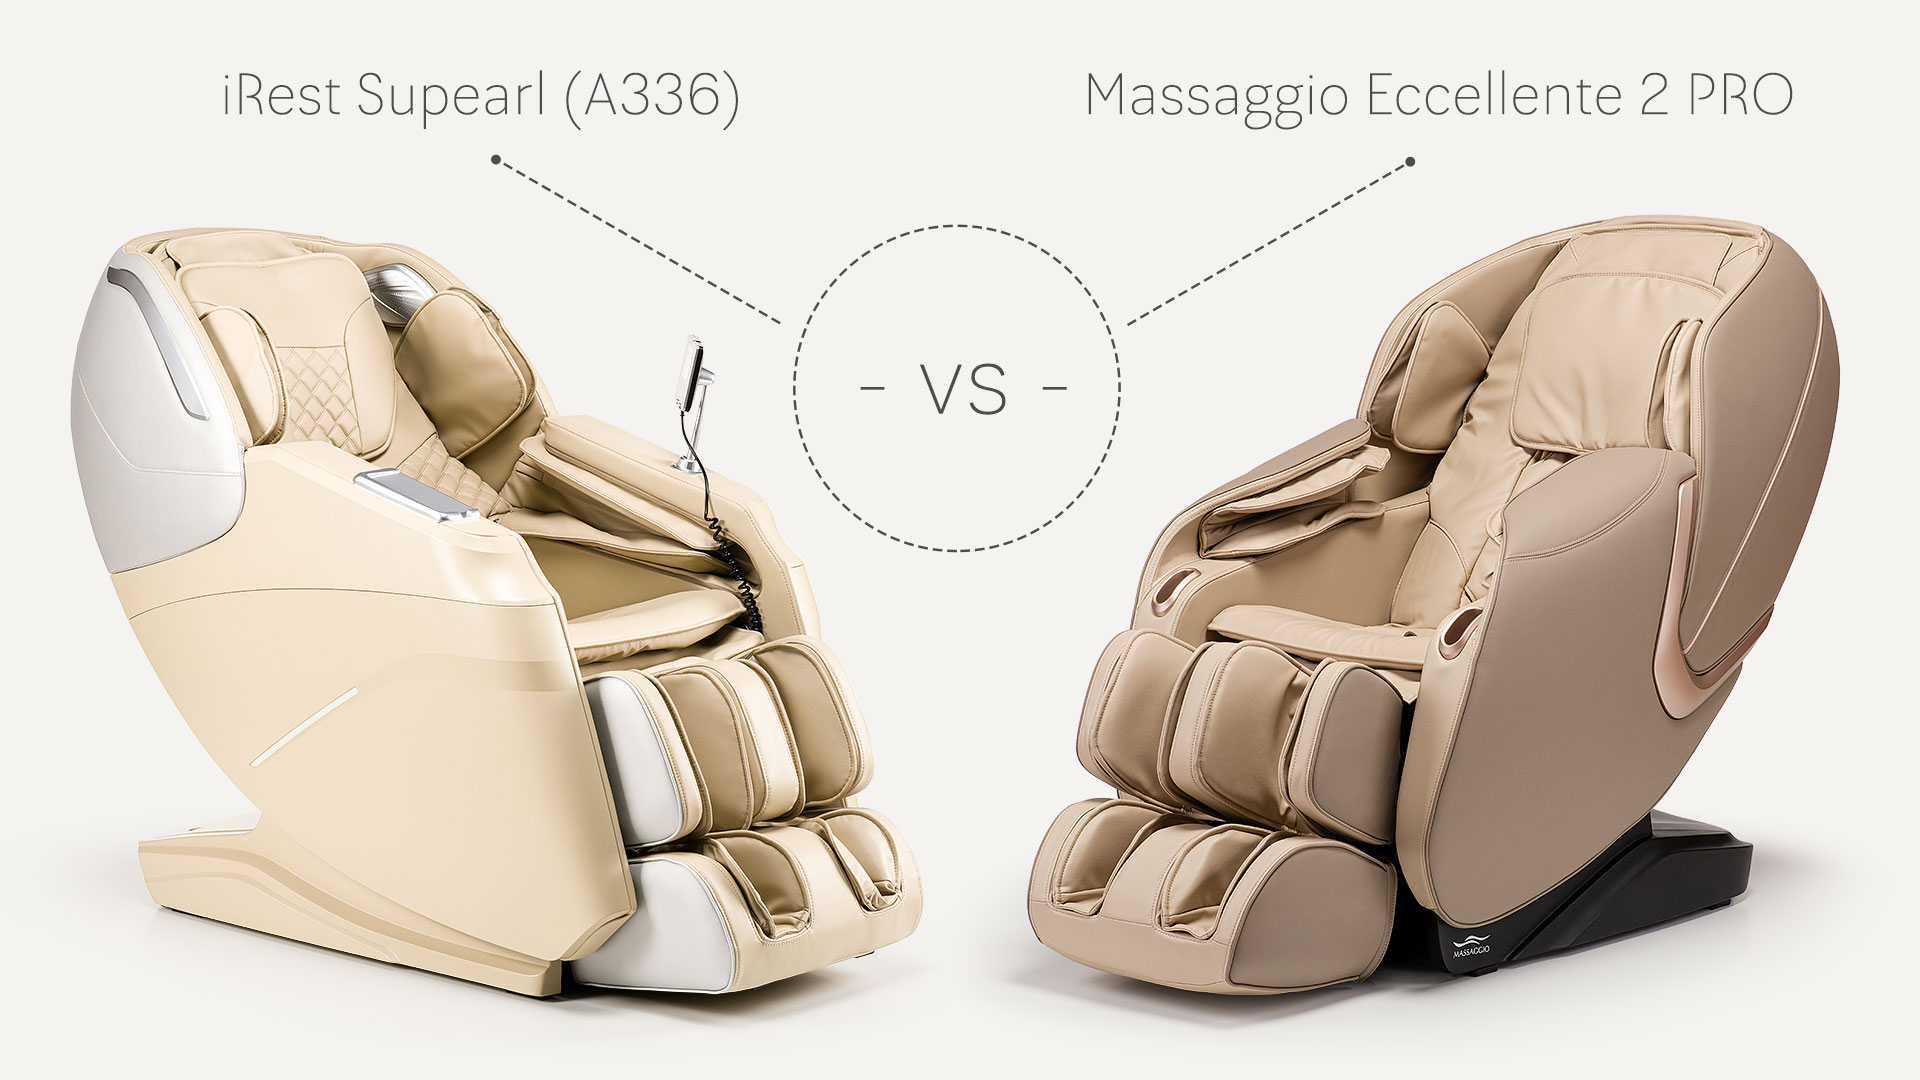 iRest Supearl (A336) vs Massaggio Eccellente 2 Pro